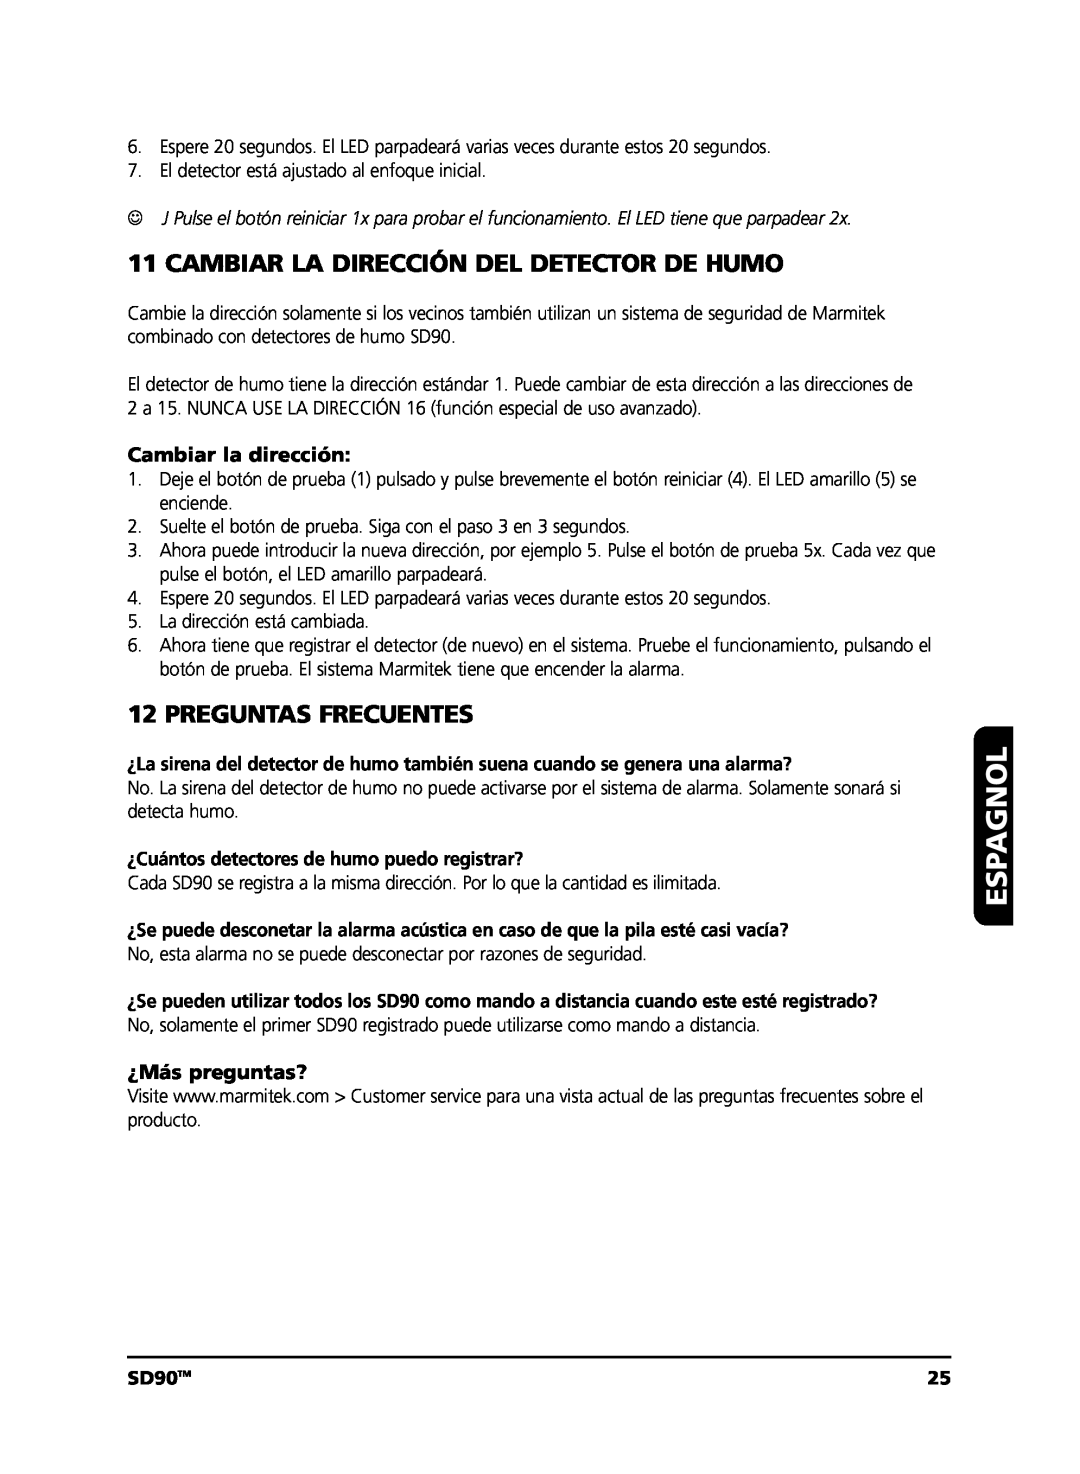 Marmitek user manual Cambiar La Dirección Del Detector De Humo, Preguntas Frecuentes, Espagnol, SD90TM 